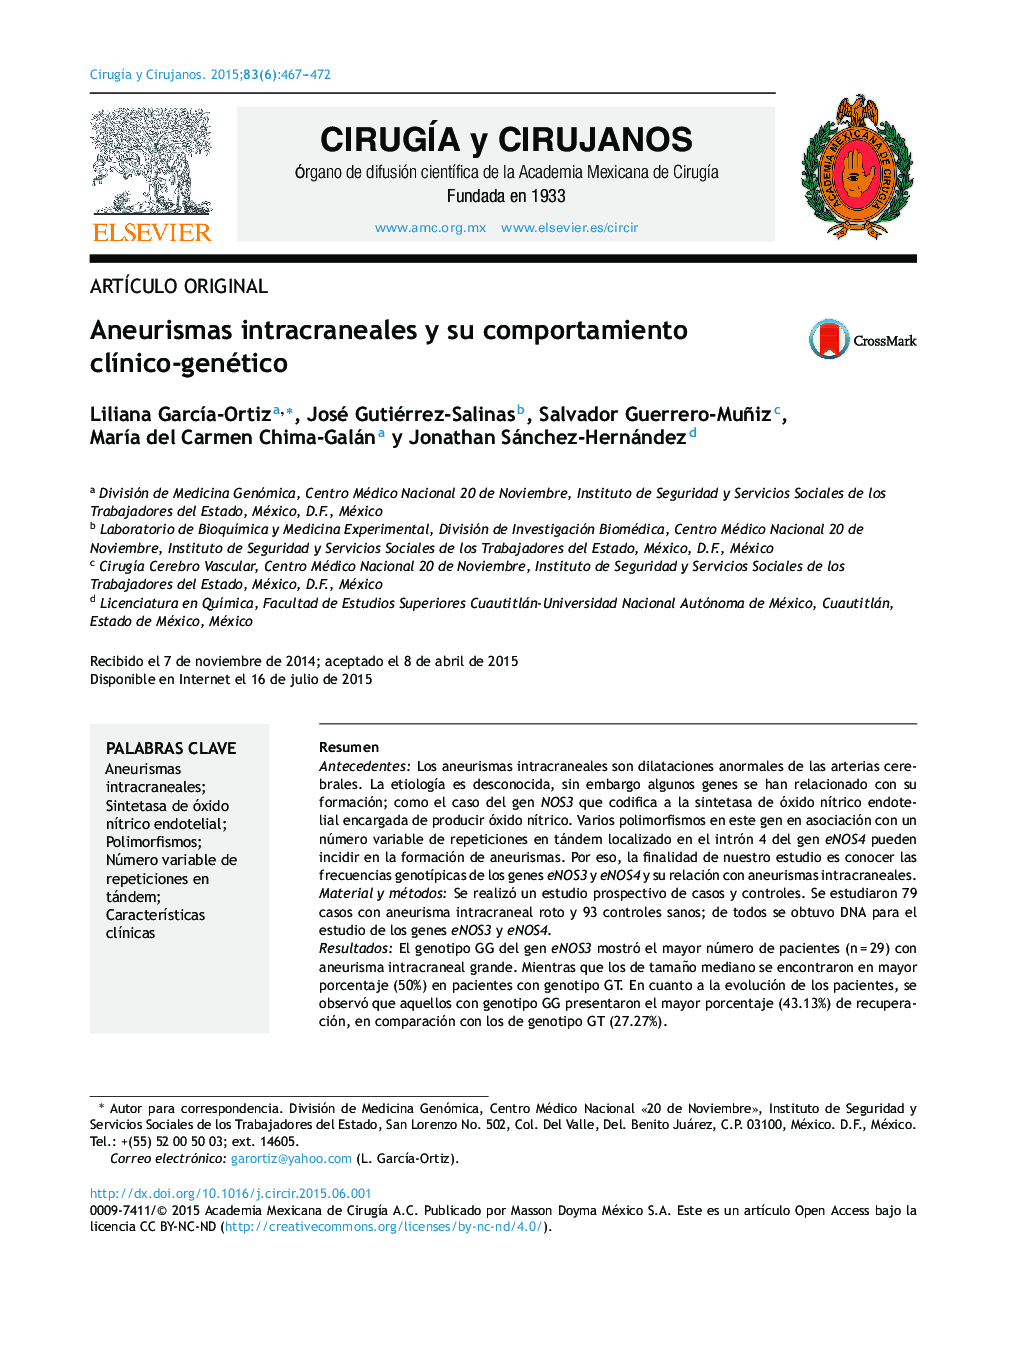 Aneurismas intracraneales y su comportamiento clínico-genético